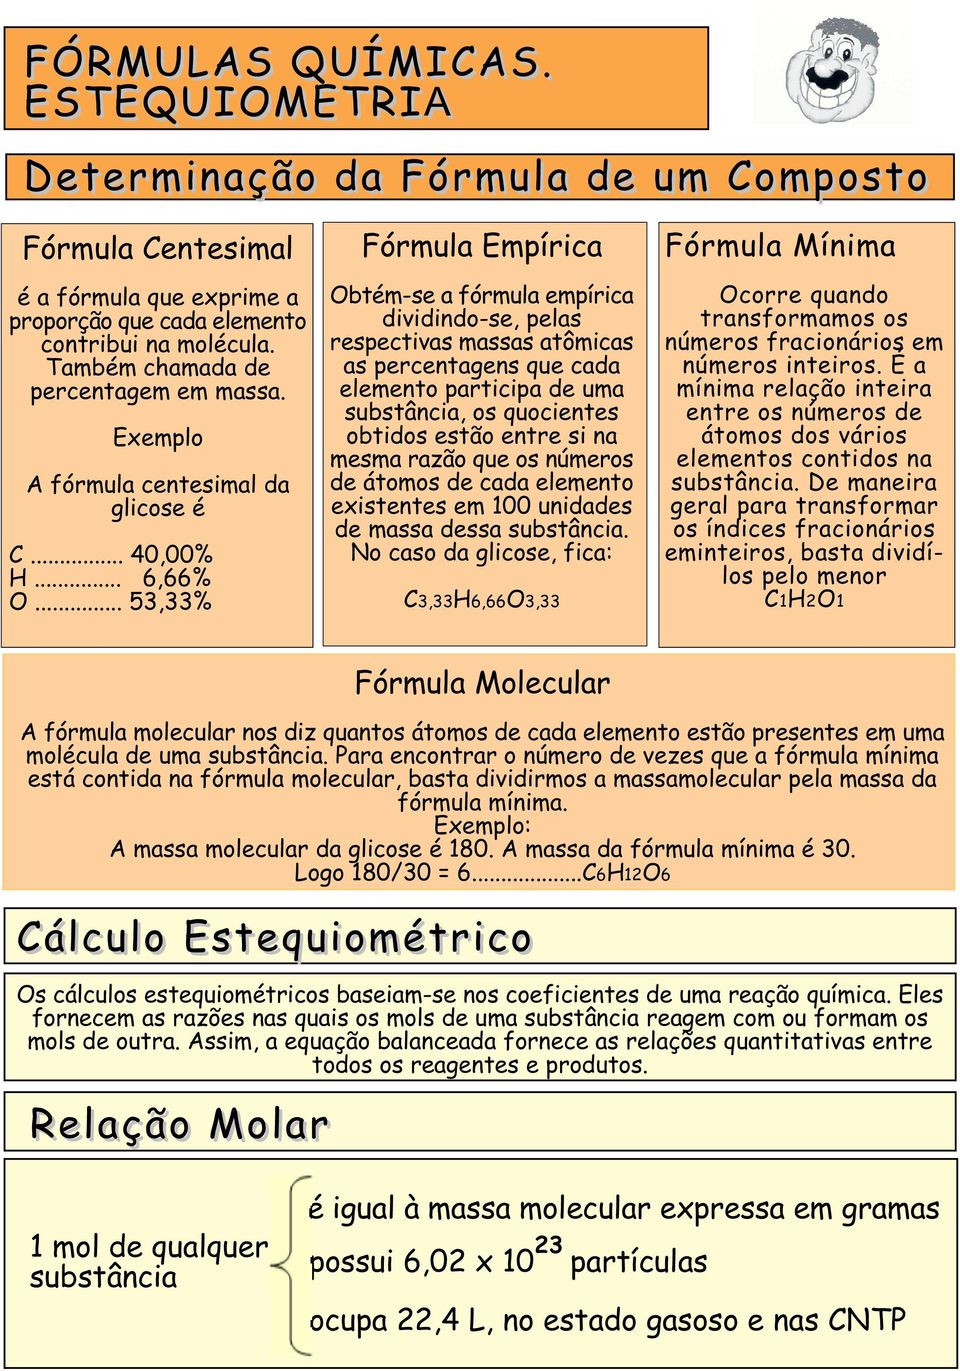 .. 53,33% Fórmula Empírica Obtém-se a fórmula empírica dividindo-se, pelas respectivas massas atômicas as percentagens que cada elemento participa de uma substância, os quocientes obtidos estão entre